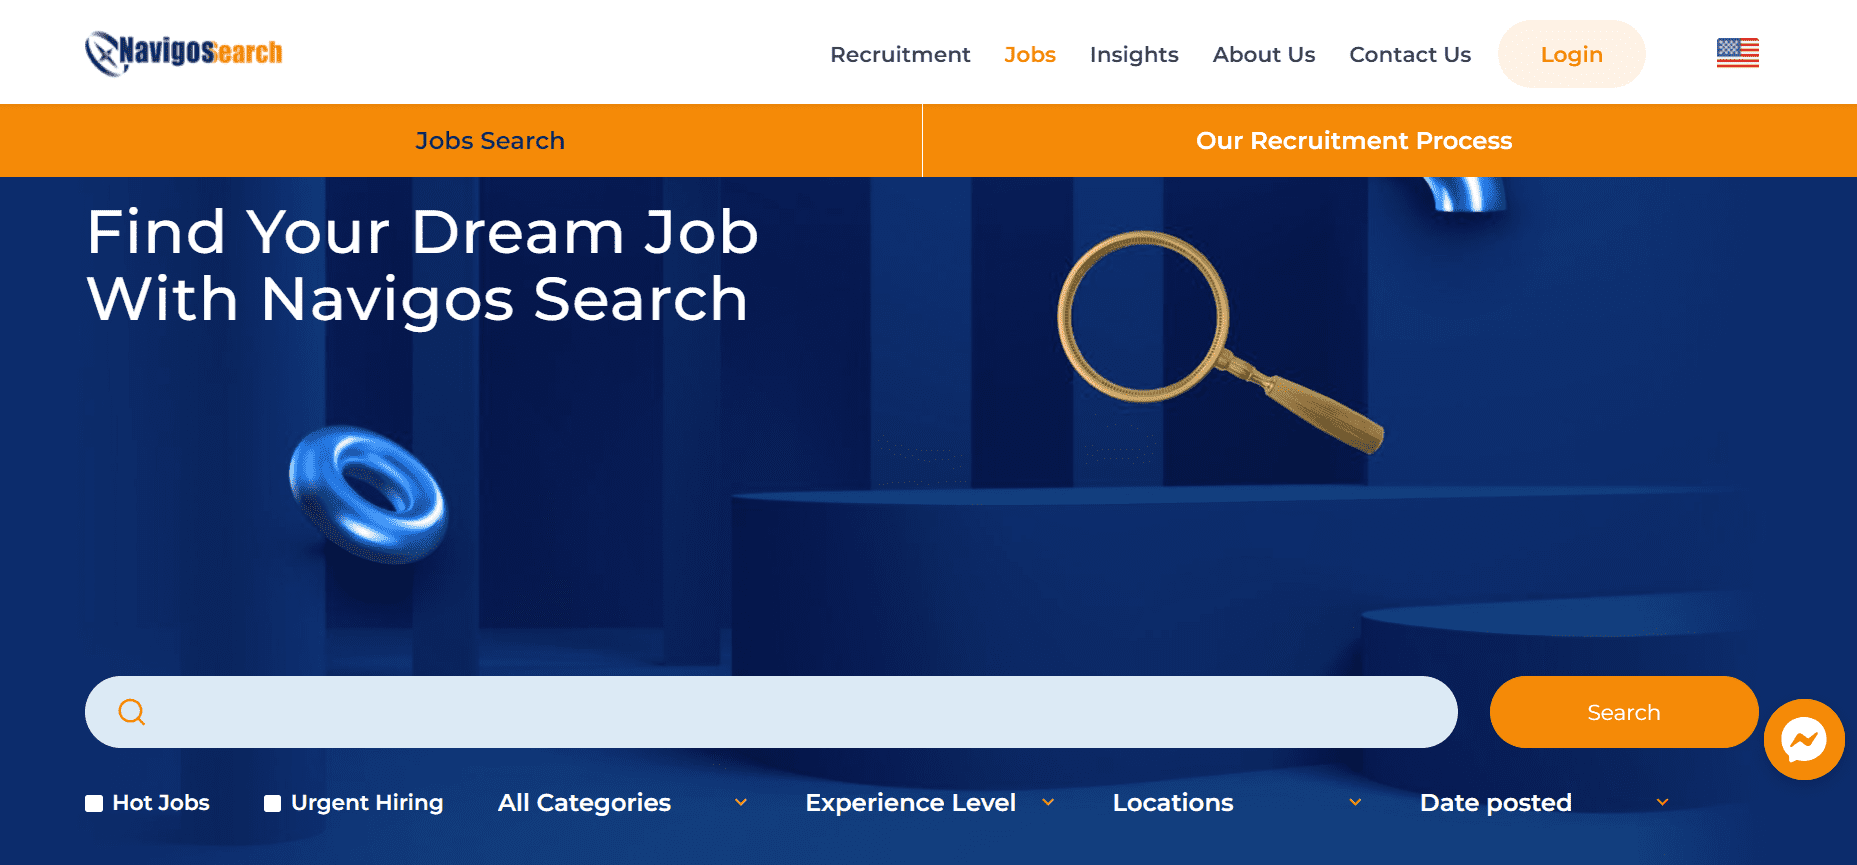 Tìm việc kỹ thuật viên tại Navigos Search